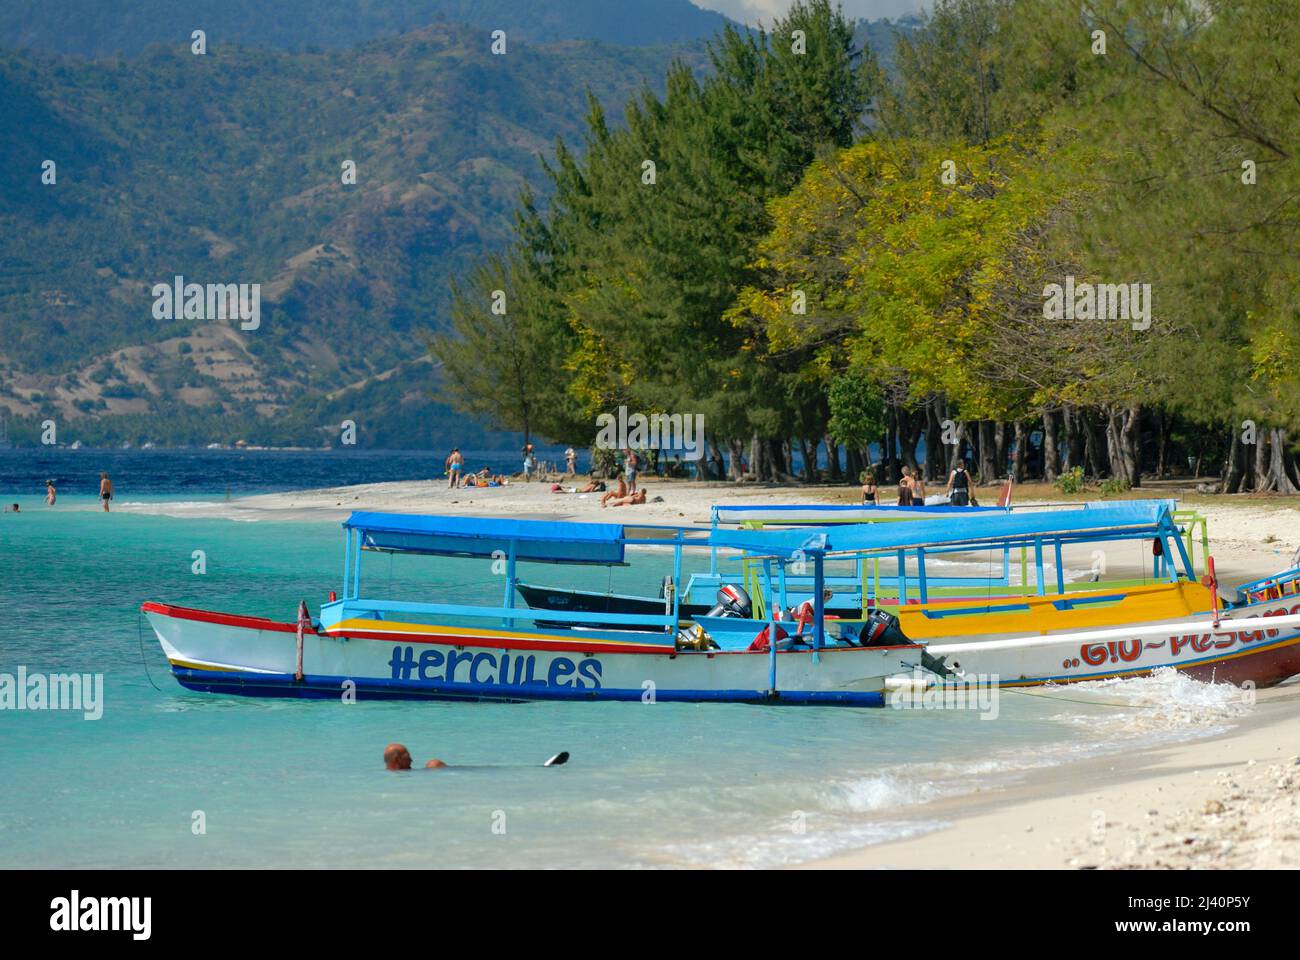 Los turistas nadan y se relajan y los barcos amarrados en una de las playas de Gili Trawangan. Foto de stock